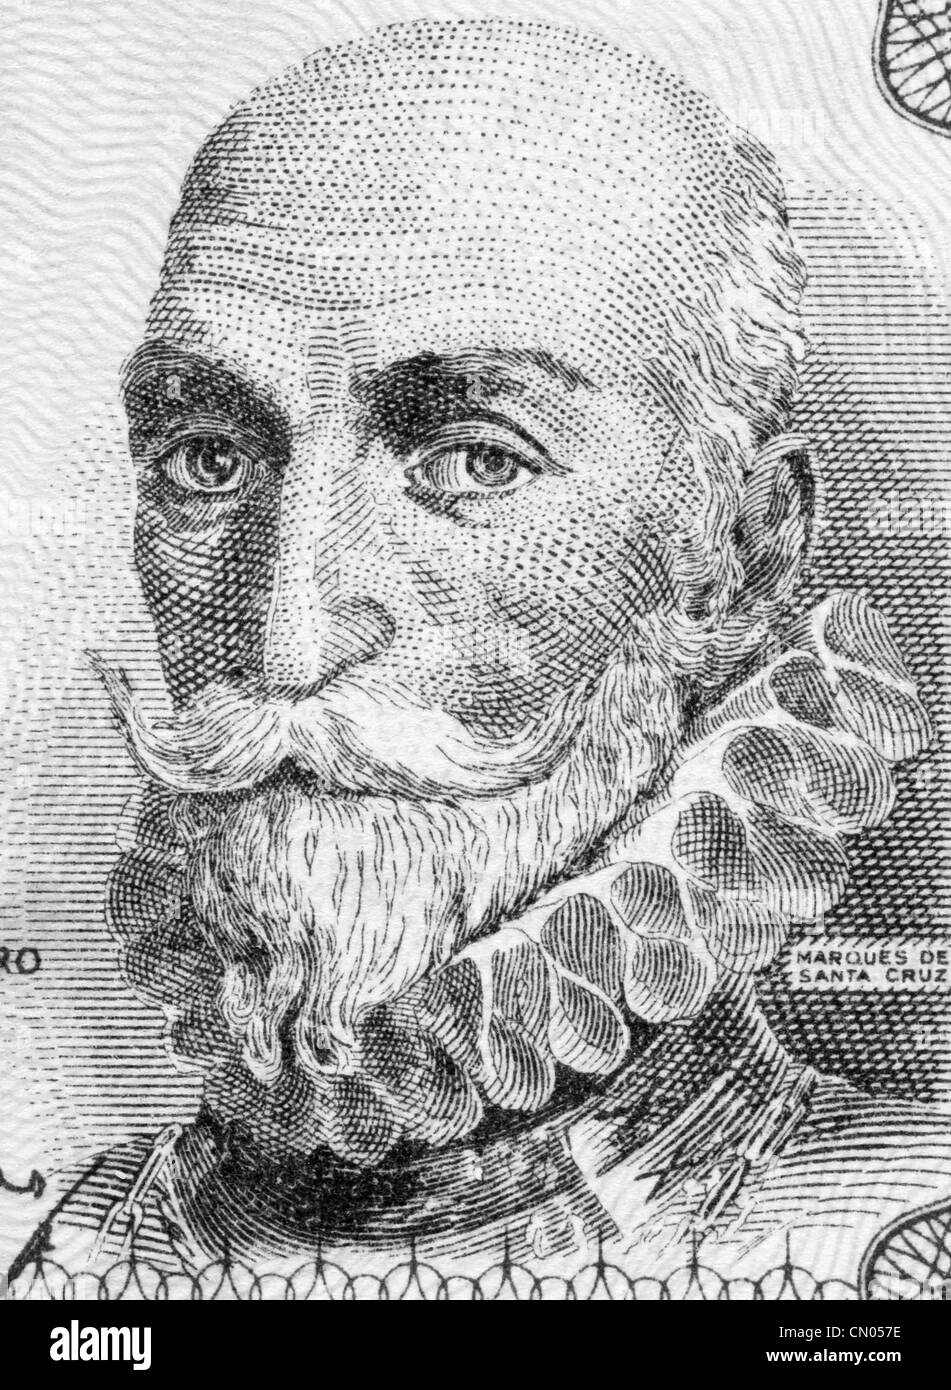 Alvaro de Bazan, 1er marquis de Santa Cruz (1526-1588) sur 1 Peseta 1953 euros de l'Espagne. L'amiral espagnol. Banque D'Images